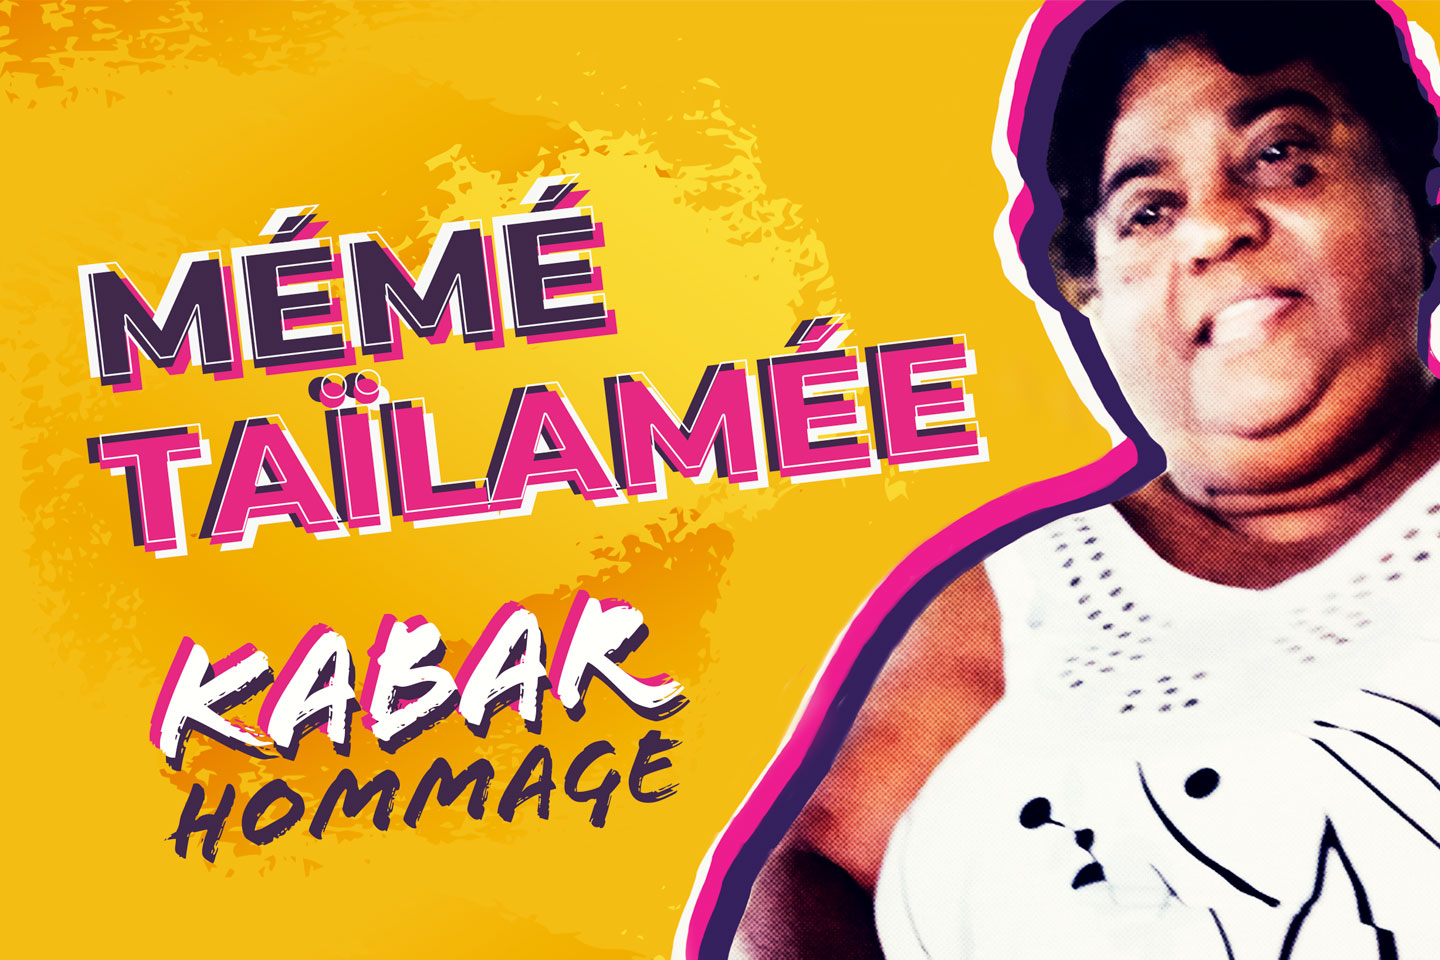 Kabar hommage à Mémé Taïlamée